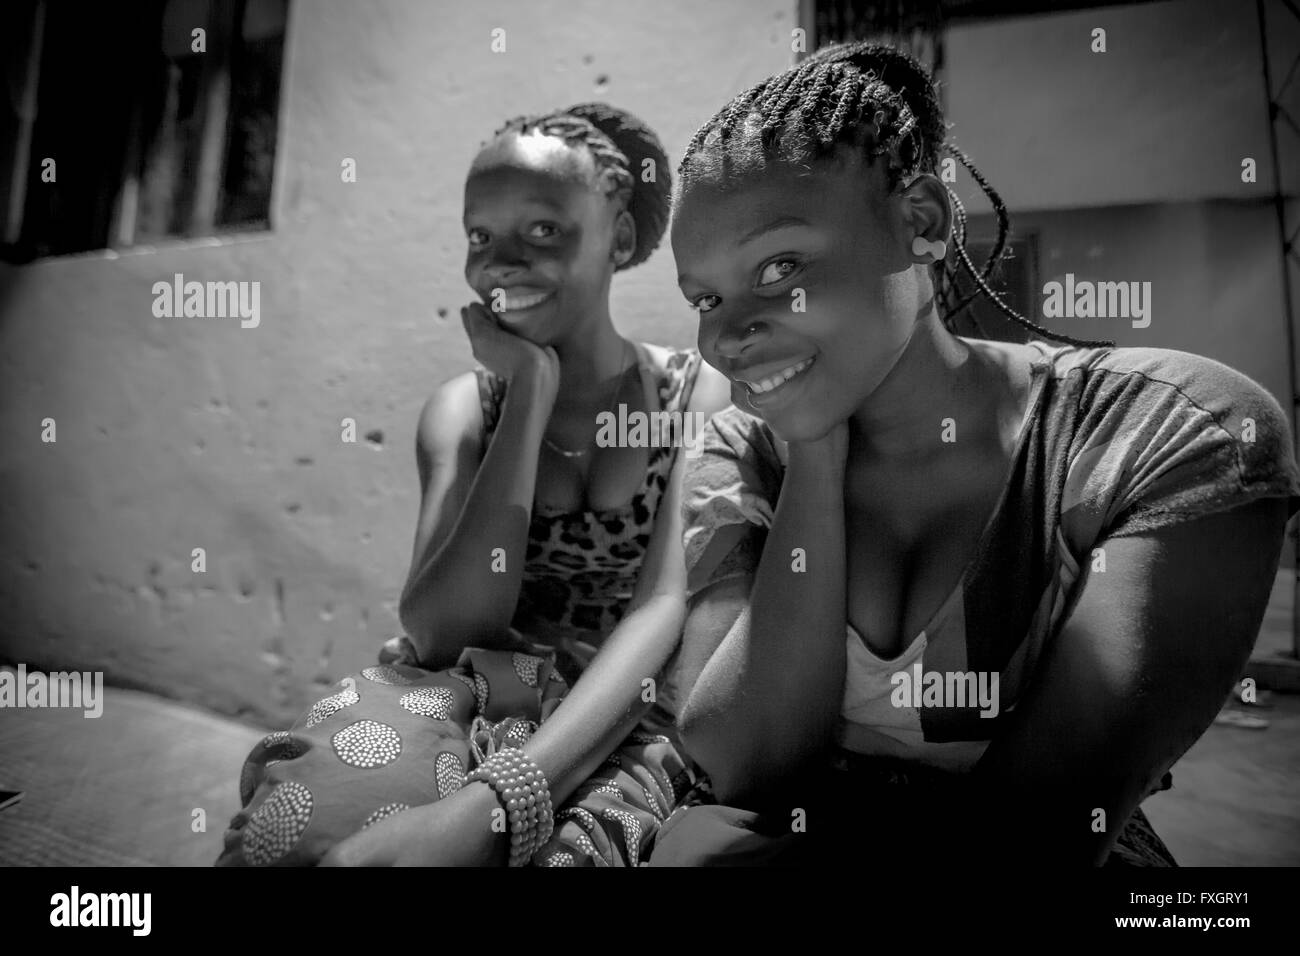 Mosambik, zwei Mädchen Freundschaft Lächeln und posieren, schwarz und weiß, B&W. Stockfoto